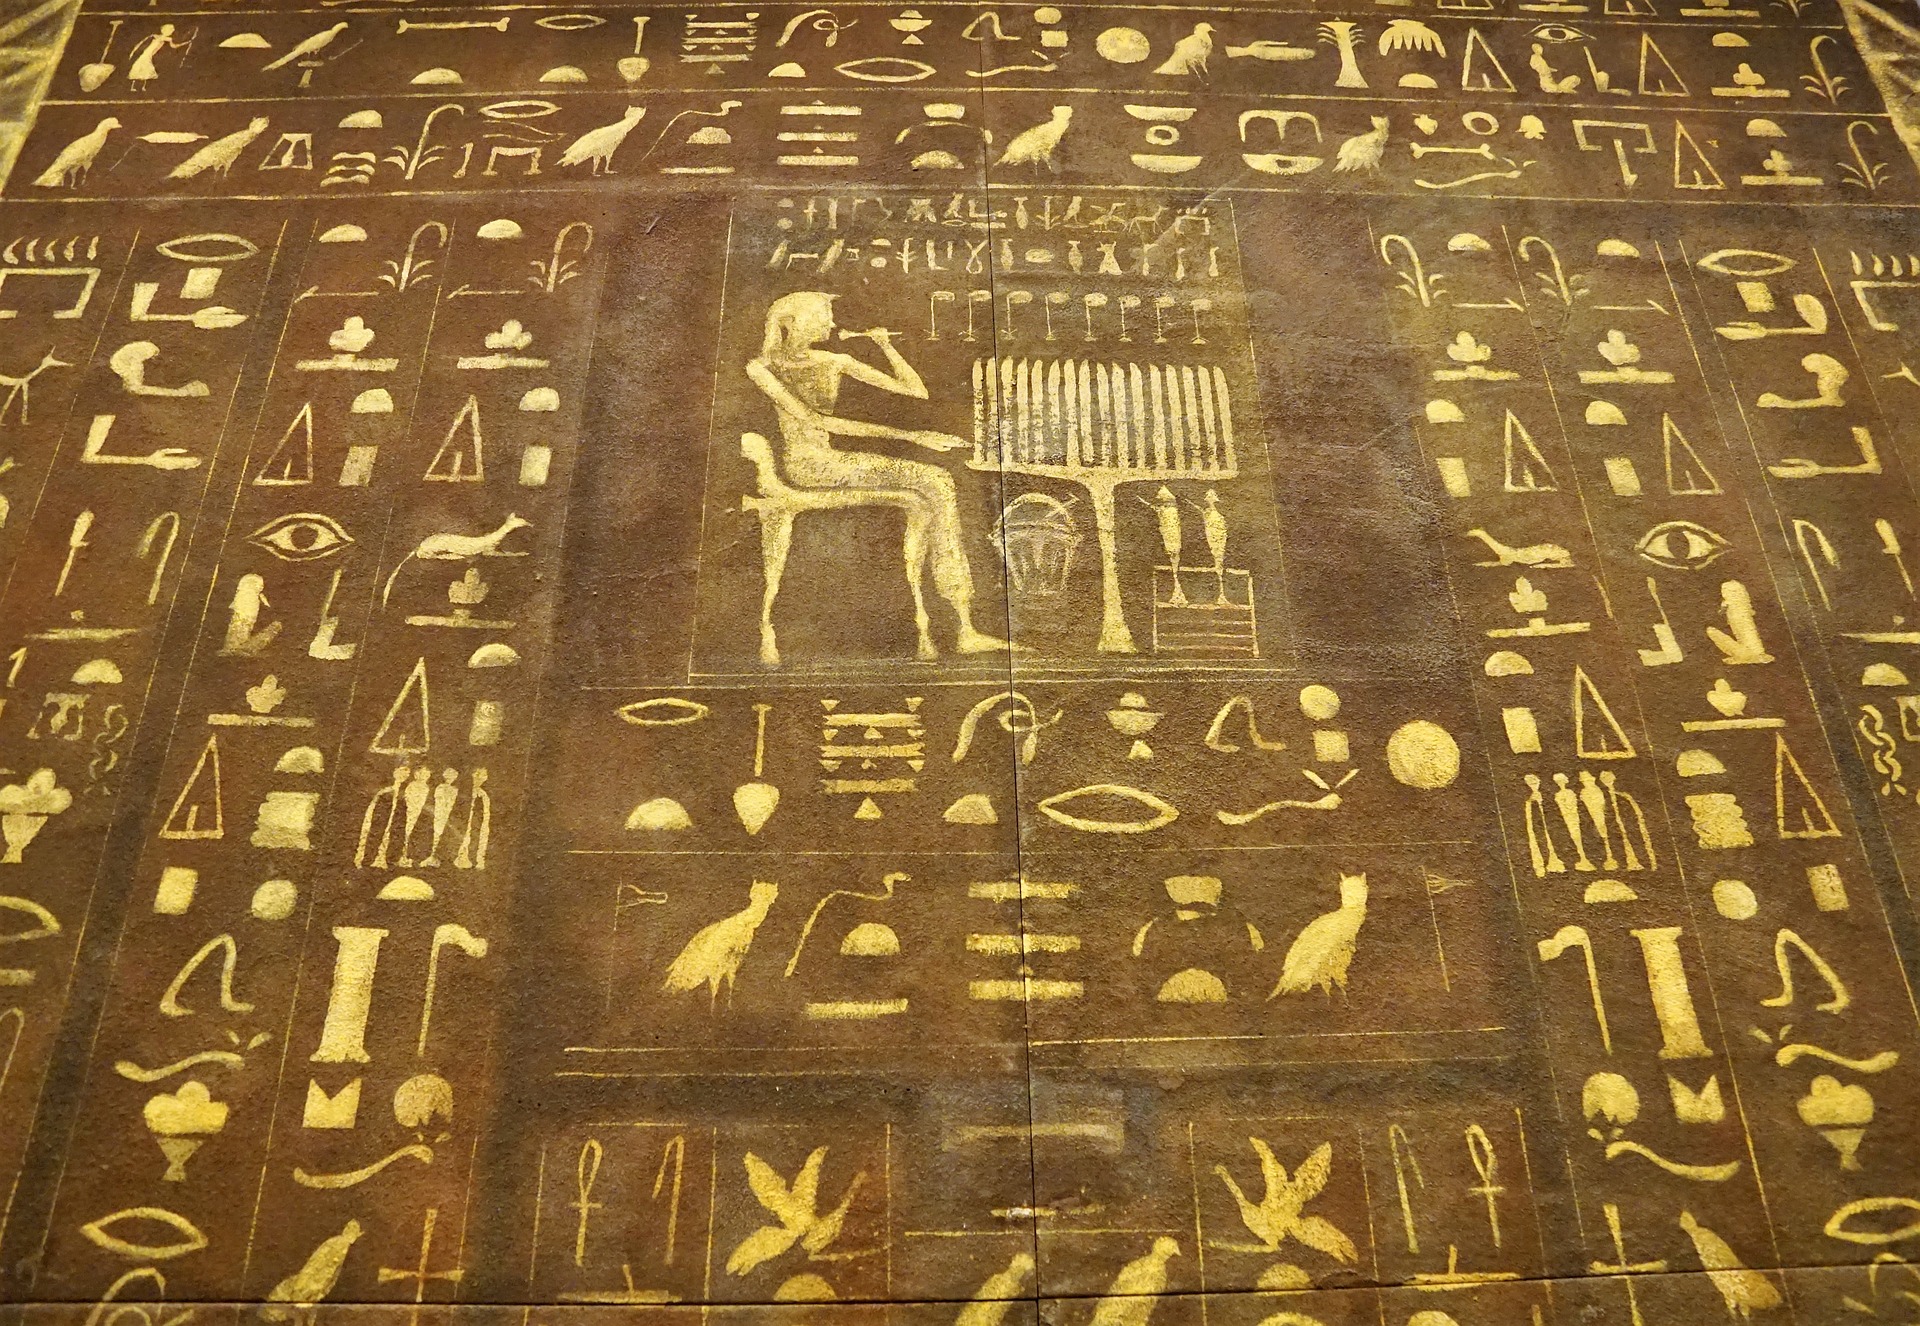 السحر الفرعوني